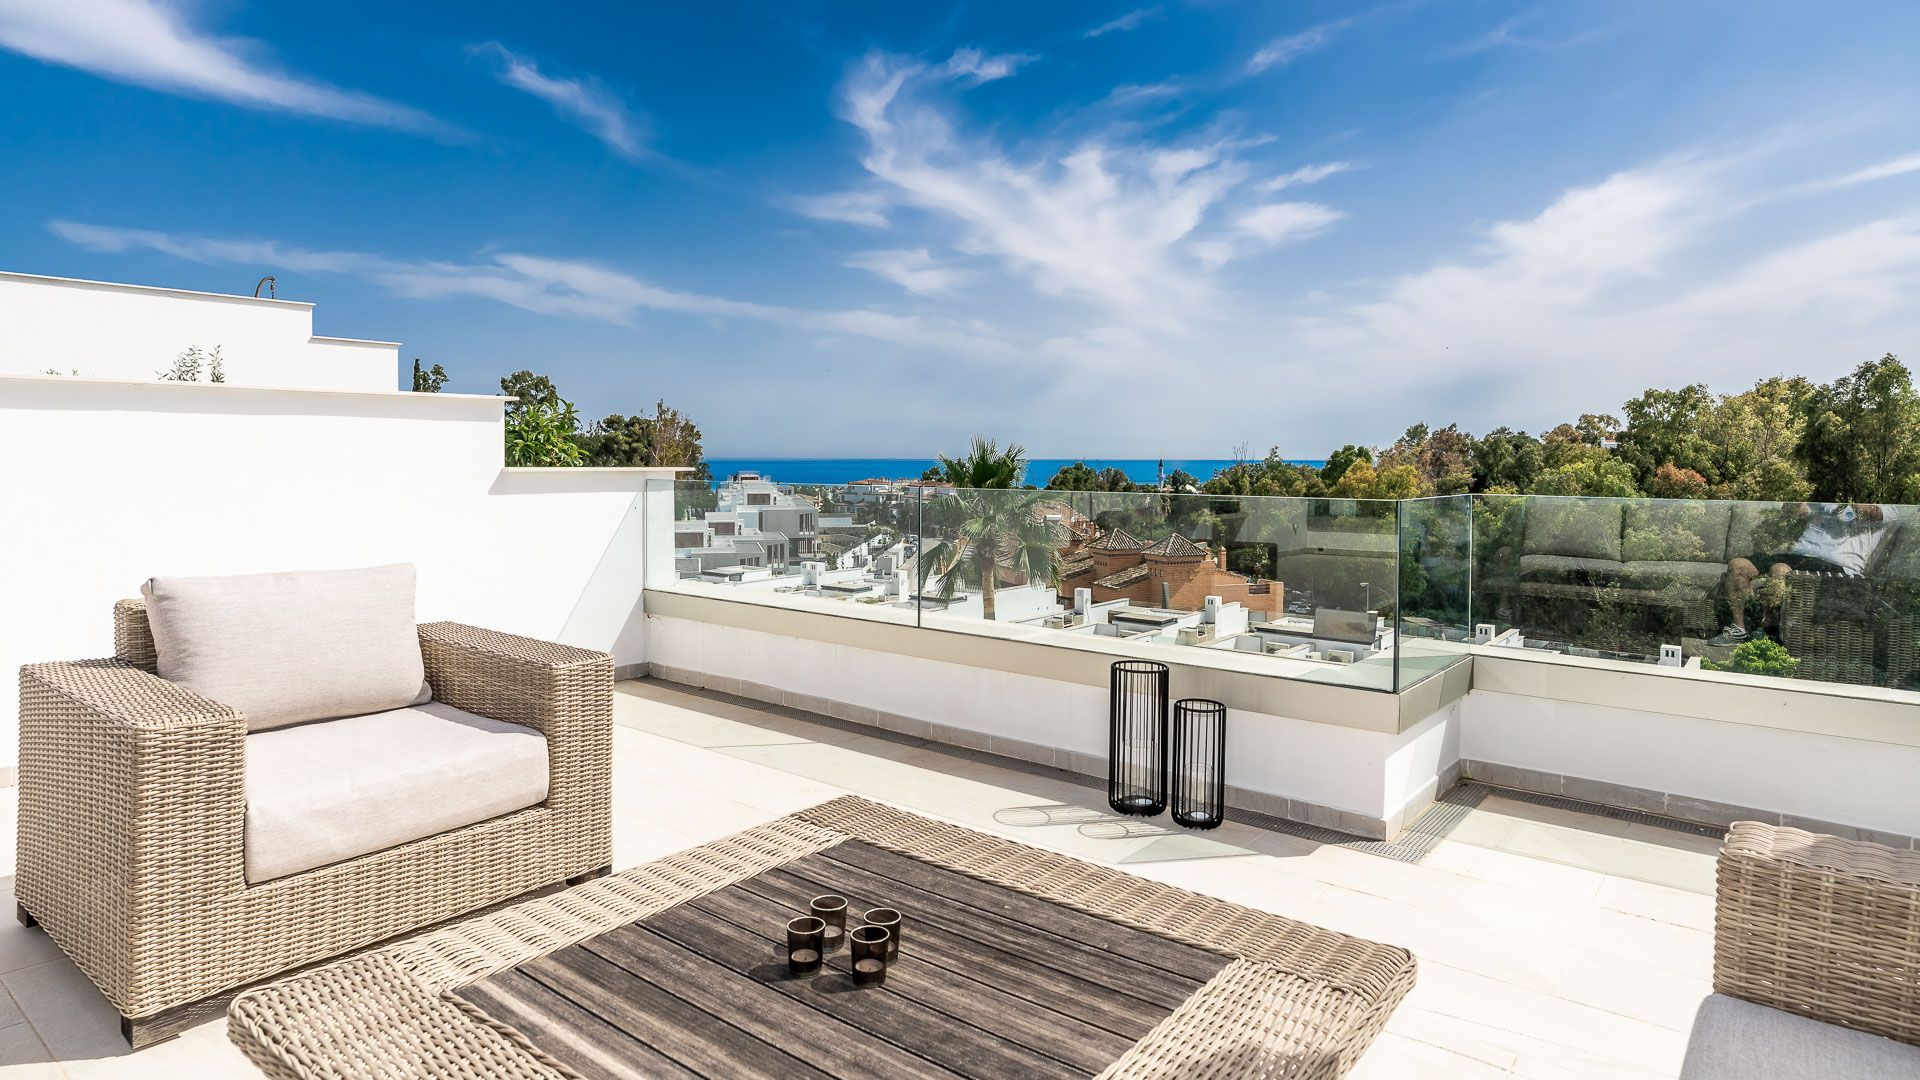 Stilvolles Reihenhaus mit Meerblick in neuer Wohnanlage in der Nähe von Puente Romano | Engel & Völkers Marbella